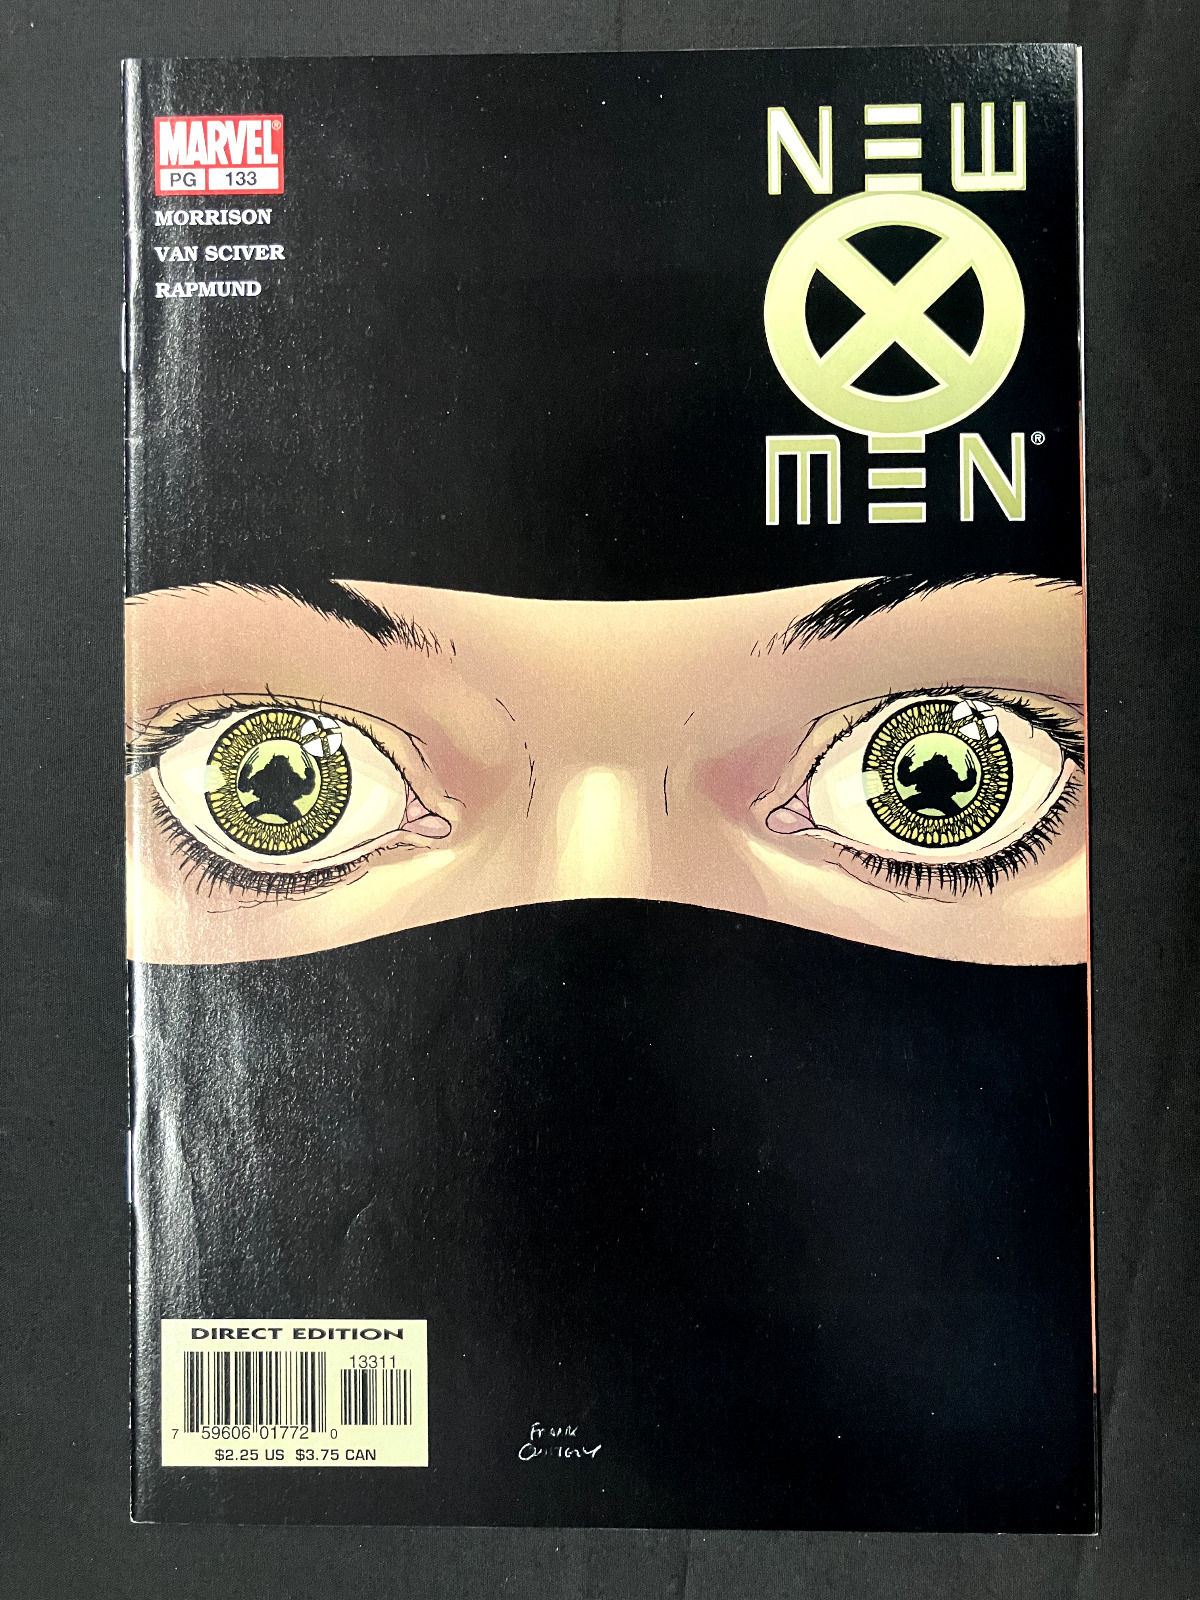 New X-Men #133 (1st Series) Marvel Comics Dec 2002